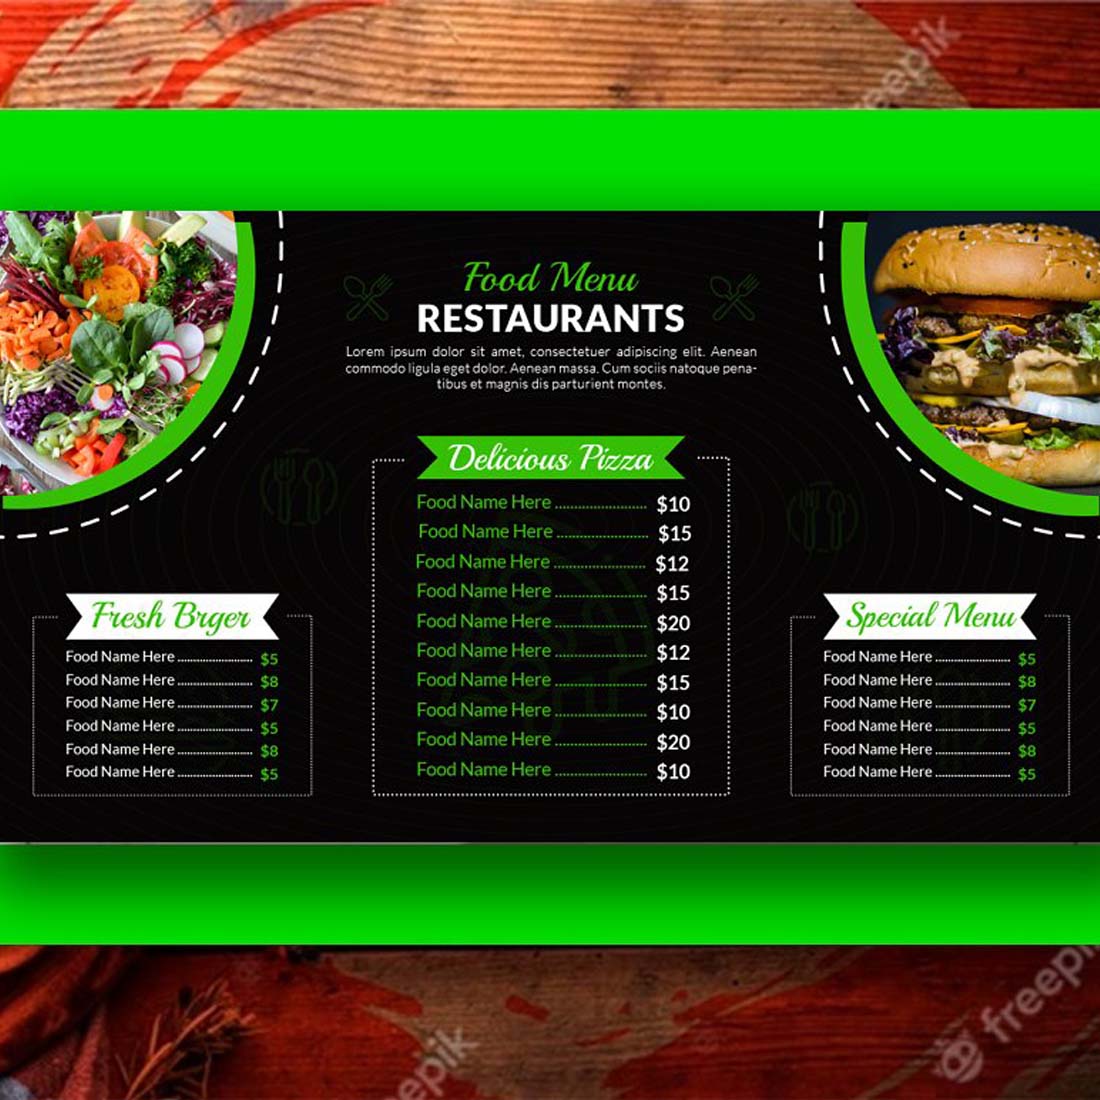 Digital Food Menu Restaurants V-05 preview image.